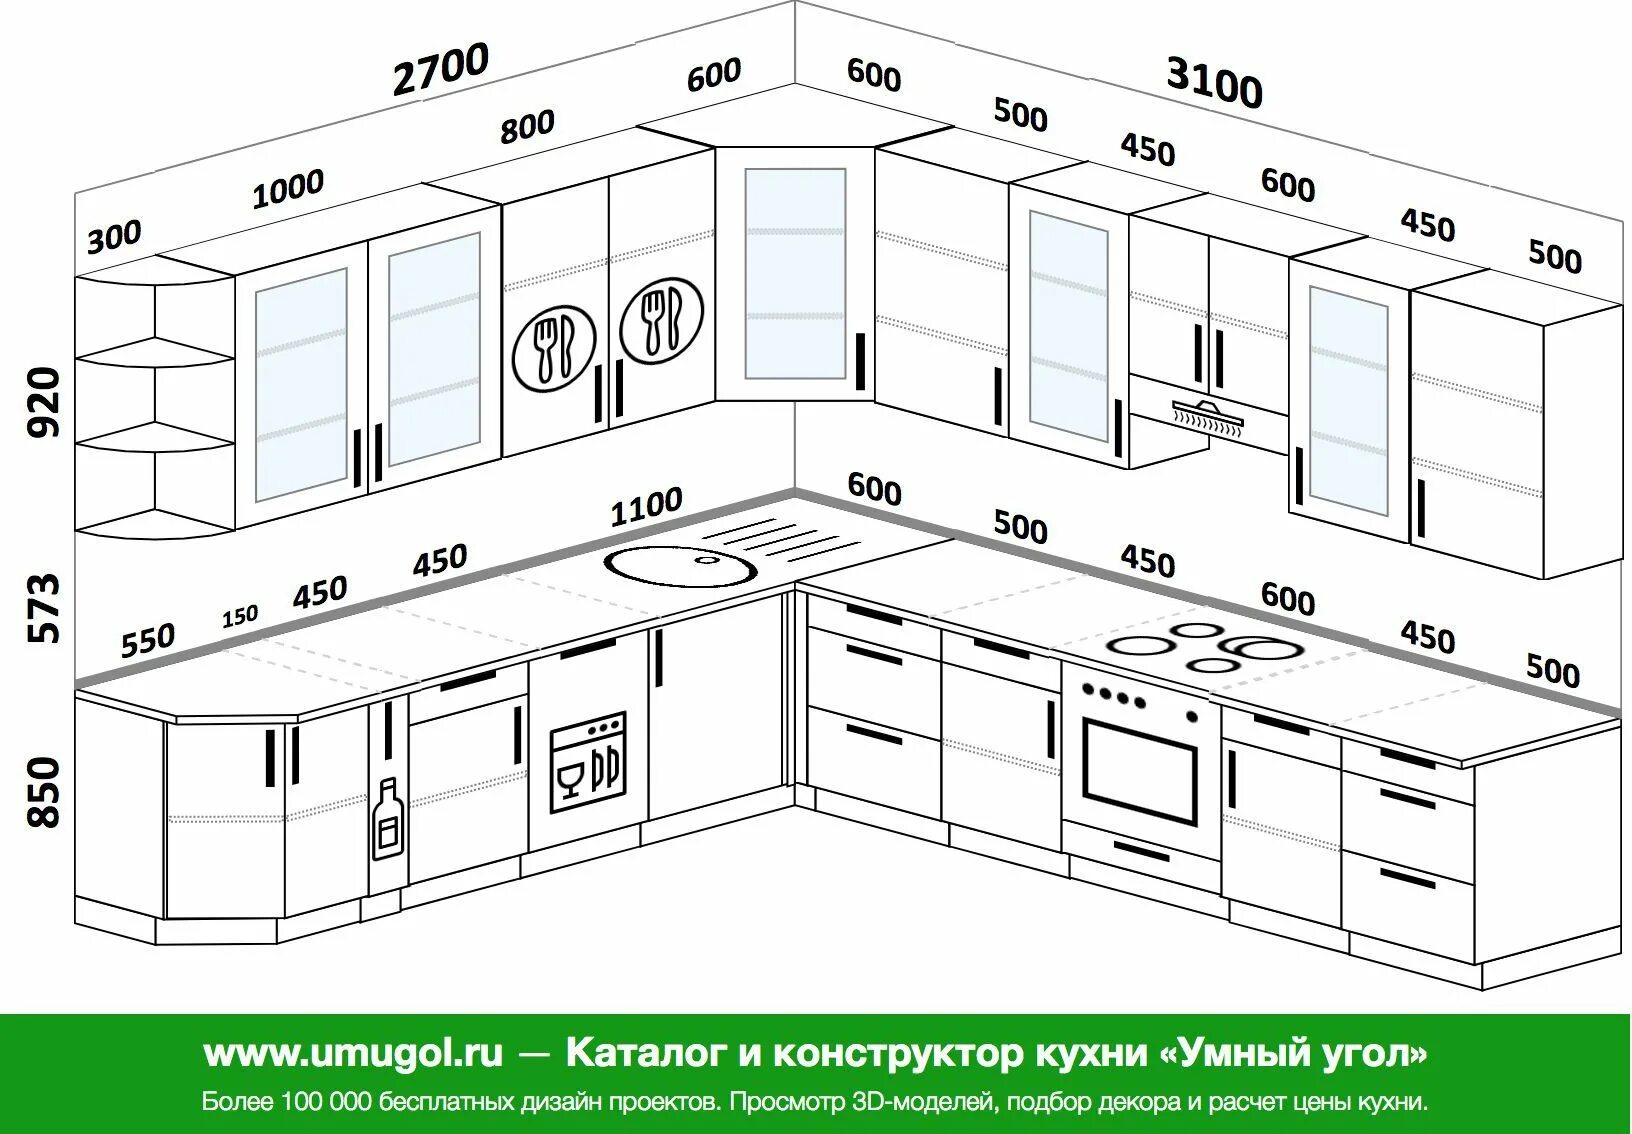 Какого размера кухонные шкафы. Размер кухонных шкафов стандарты ширина. Стандартная высота кухонных шкафчиков. Ширина верхних шкафов кухни стандарт. Стандартная высота кухонных шкафчиков верхних.